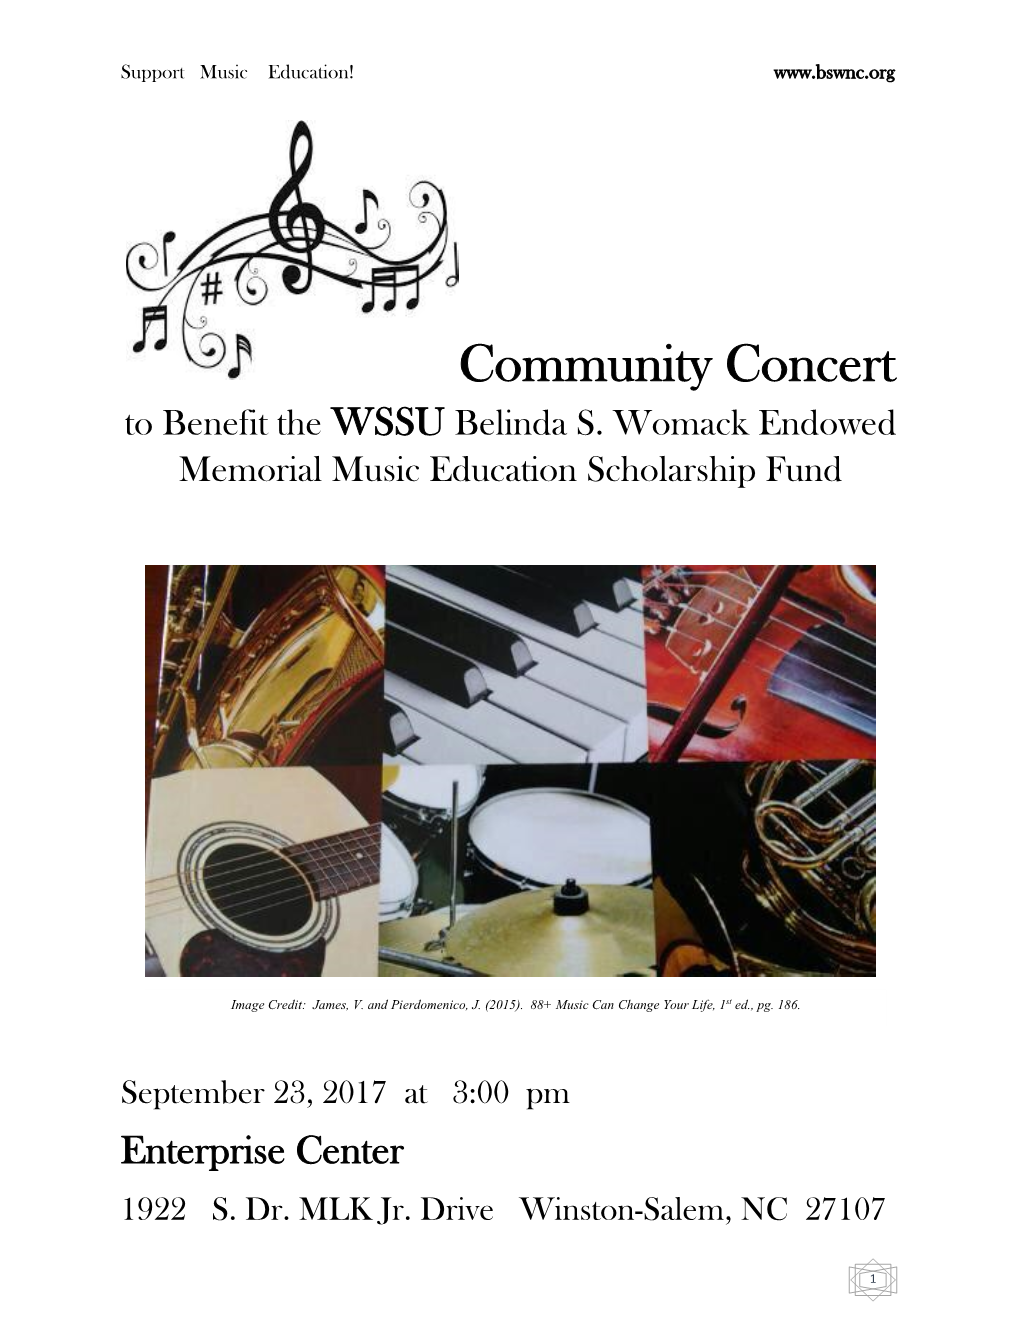 Community Concert to Benefit the WSSU Belinda S